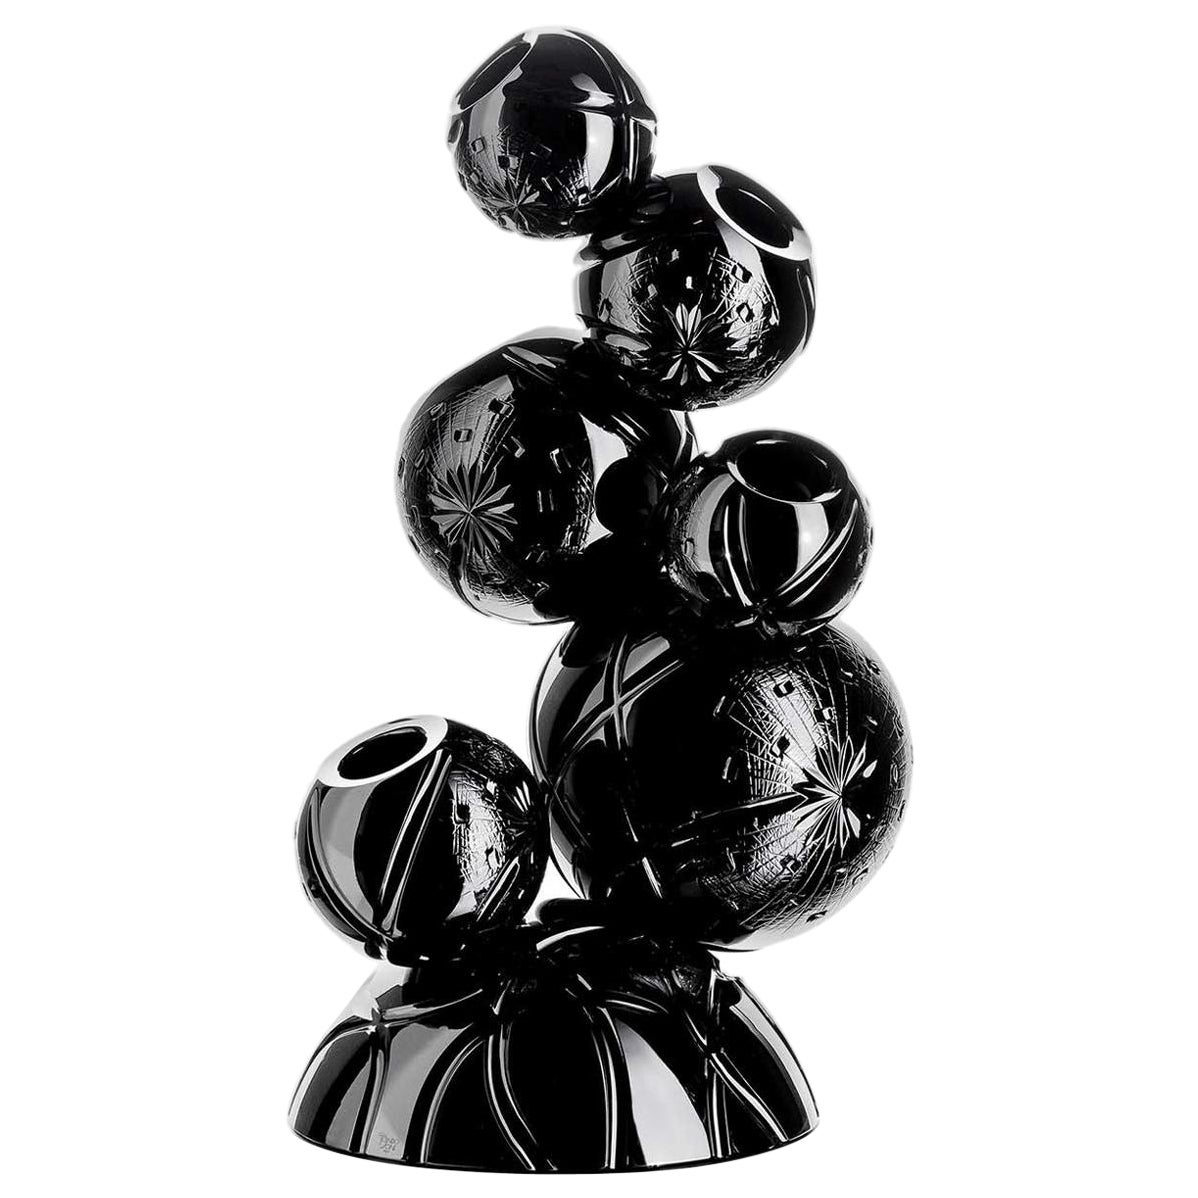 Tondo Doni Rhapsody Black Vase by Mario Cioni For Sale